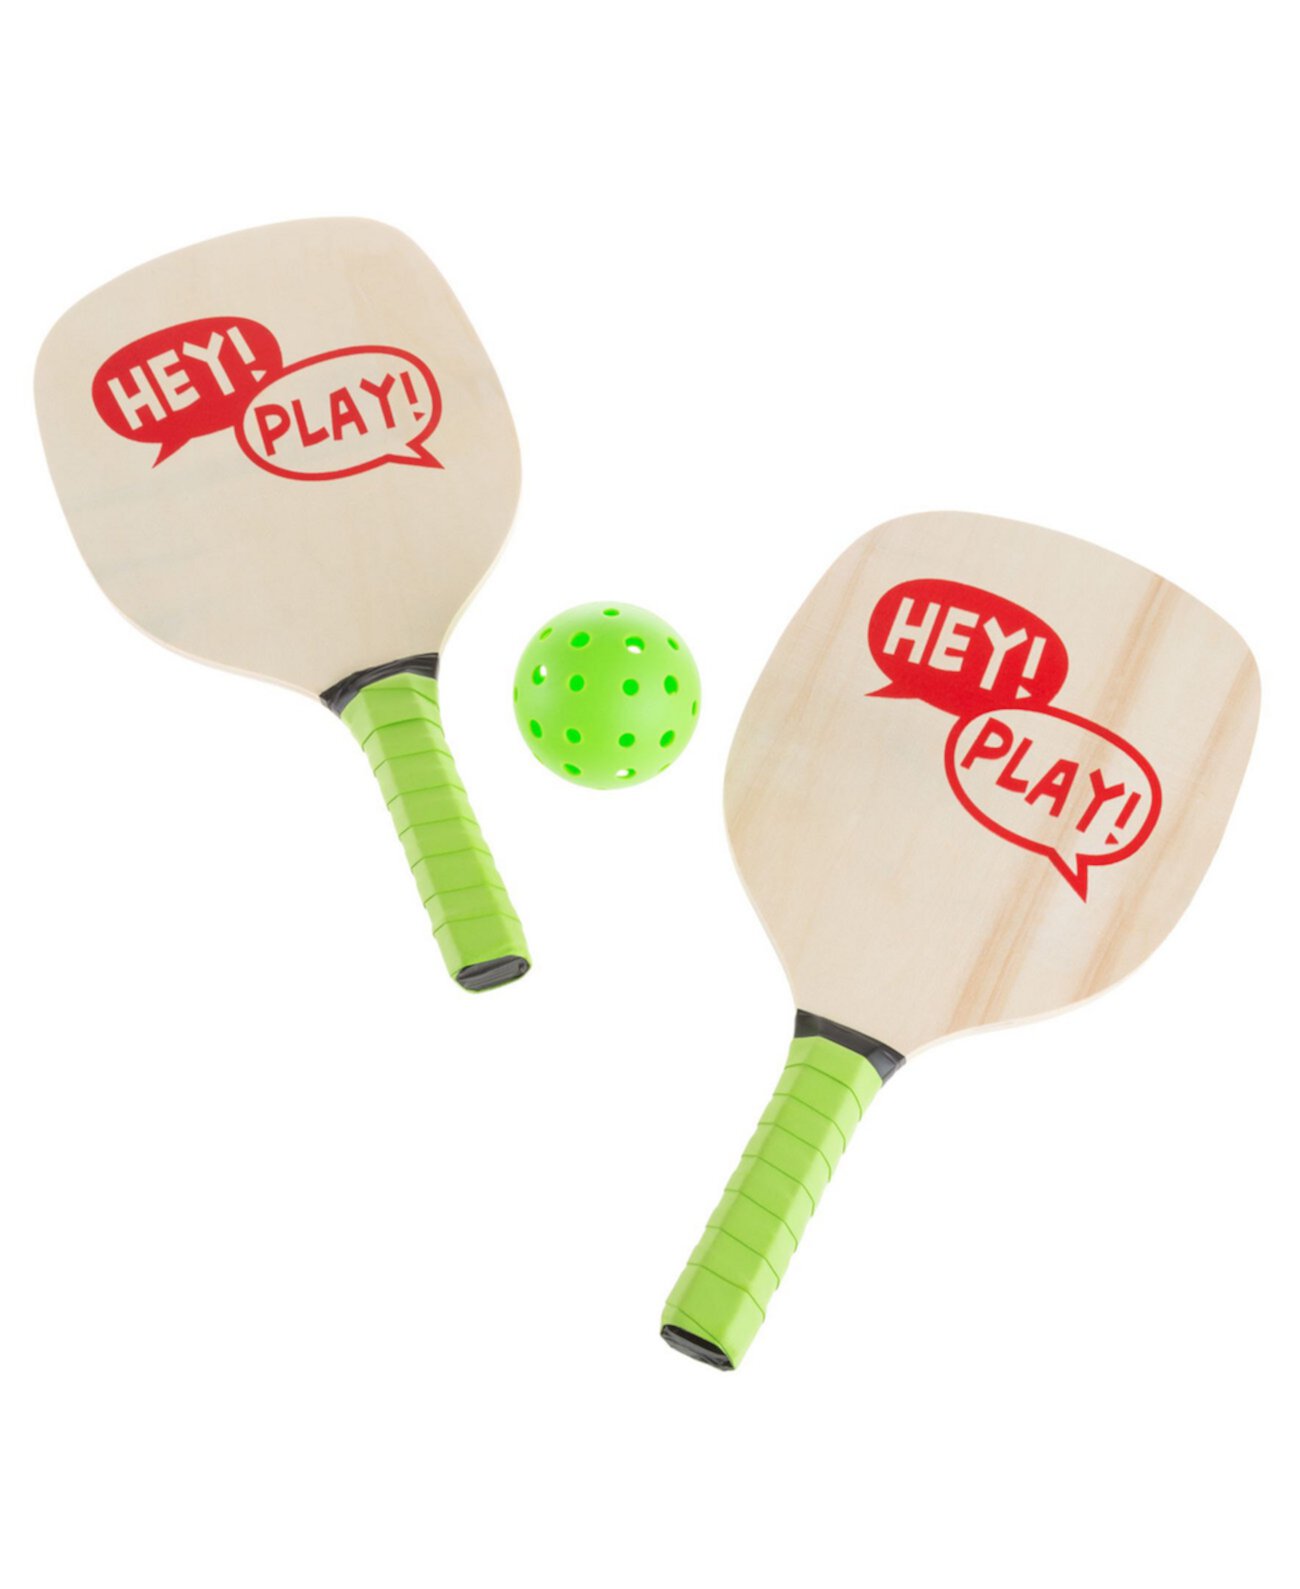 Набор для игр Hey Play Paddle Ball — пара легких ракеток для начинающих, мяч и сумка для игр в помещении или на улице — взрослые и дети Trademark Global